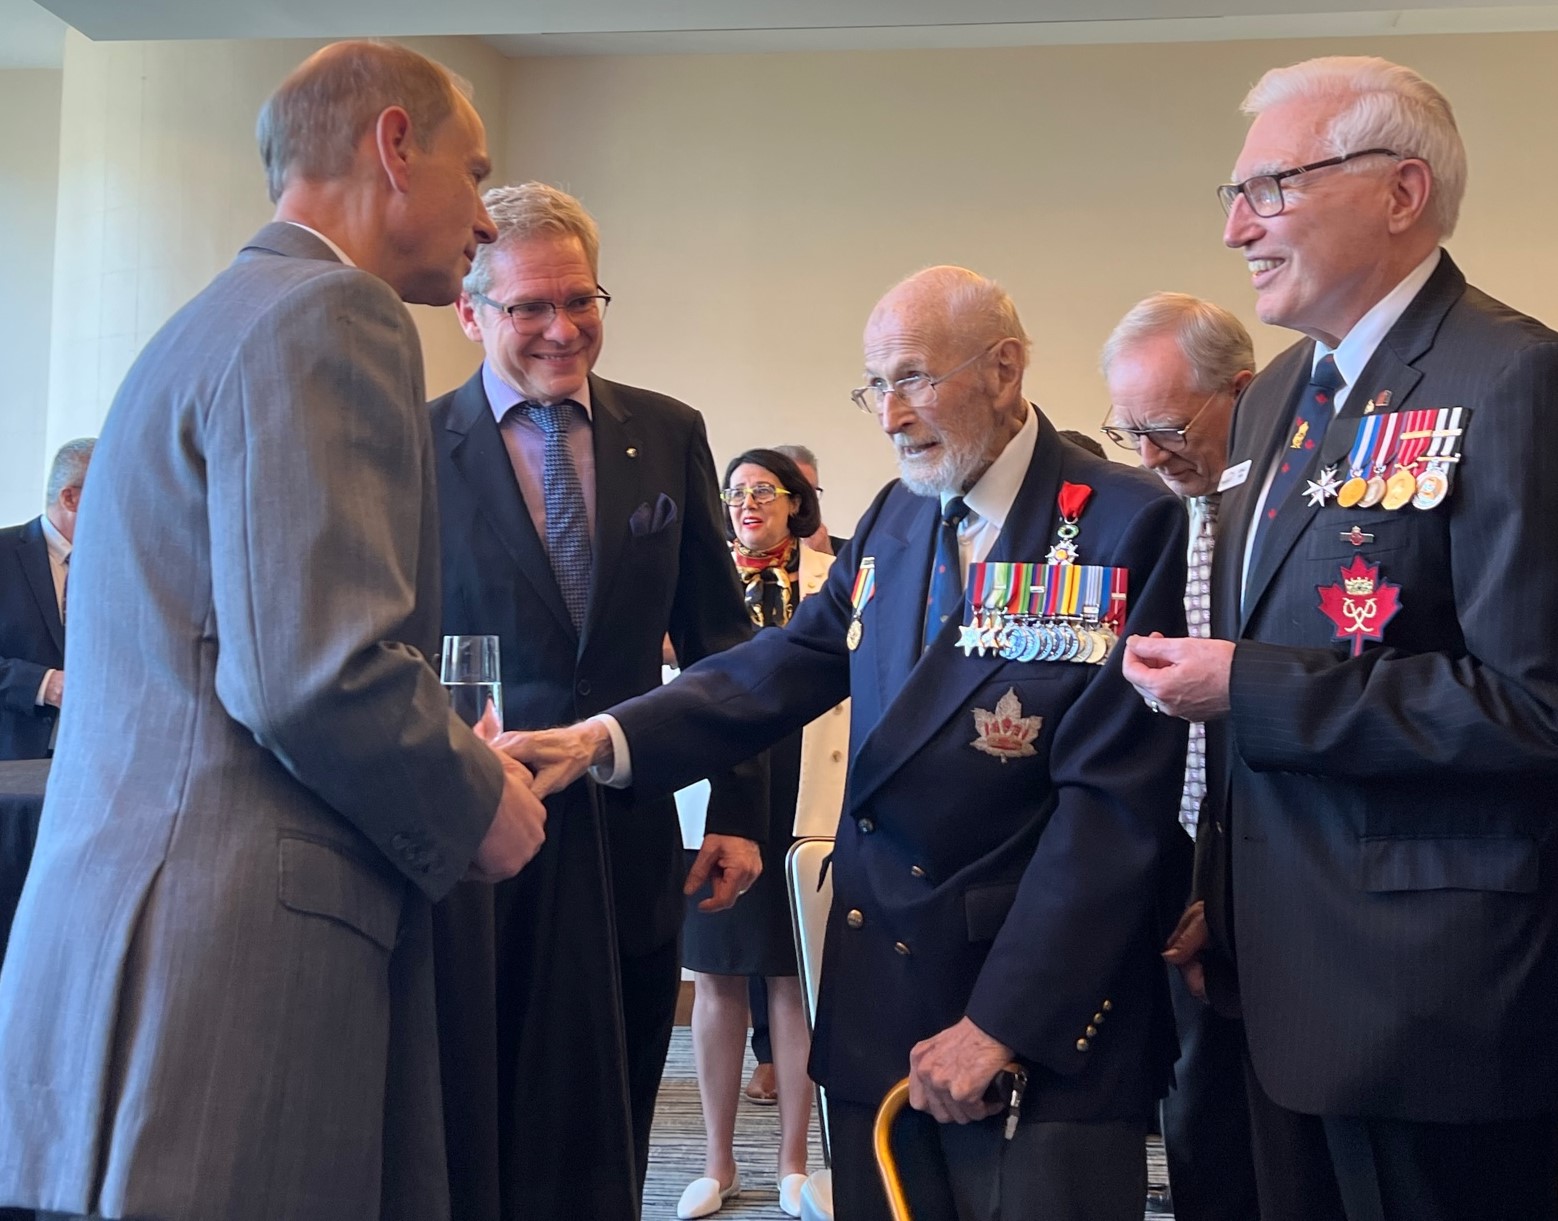 Peter Chance serre la main du Prince Edward et rencontre Randall Mang, président du B.C. Council for The Duke of Edinburgh's Award et le Capitaine de corvette (ret'd) Gerald Pash, un membre de longue date du B.C. Council.  Photo fournie